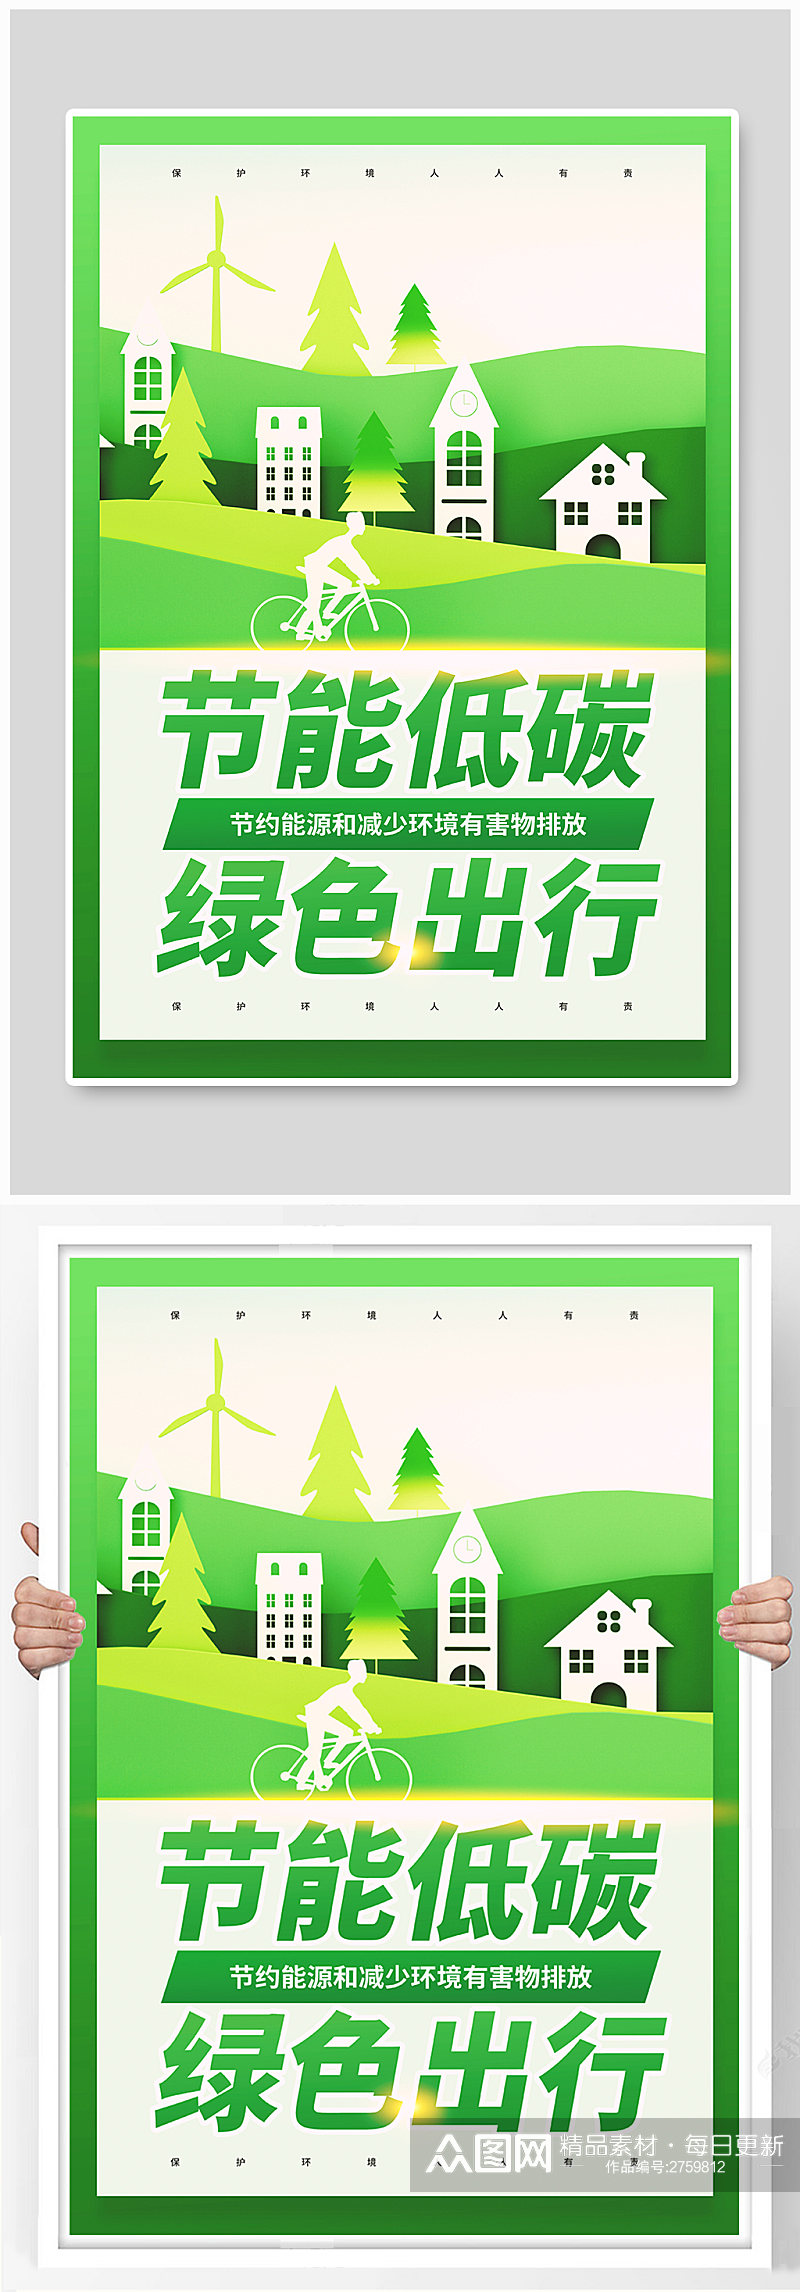 节能低碳绿色出行公益宣传海报素材